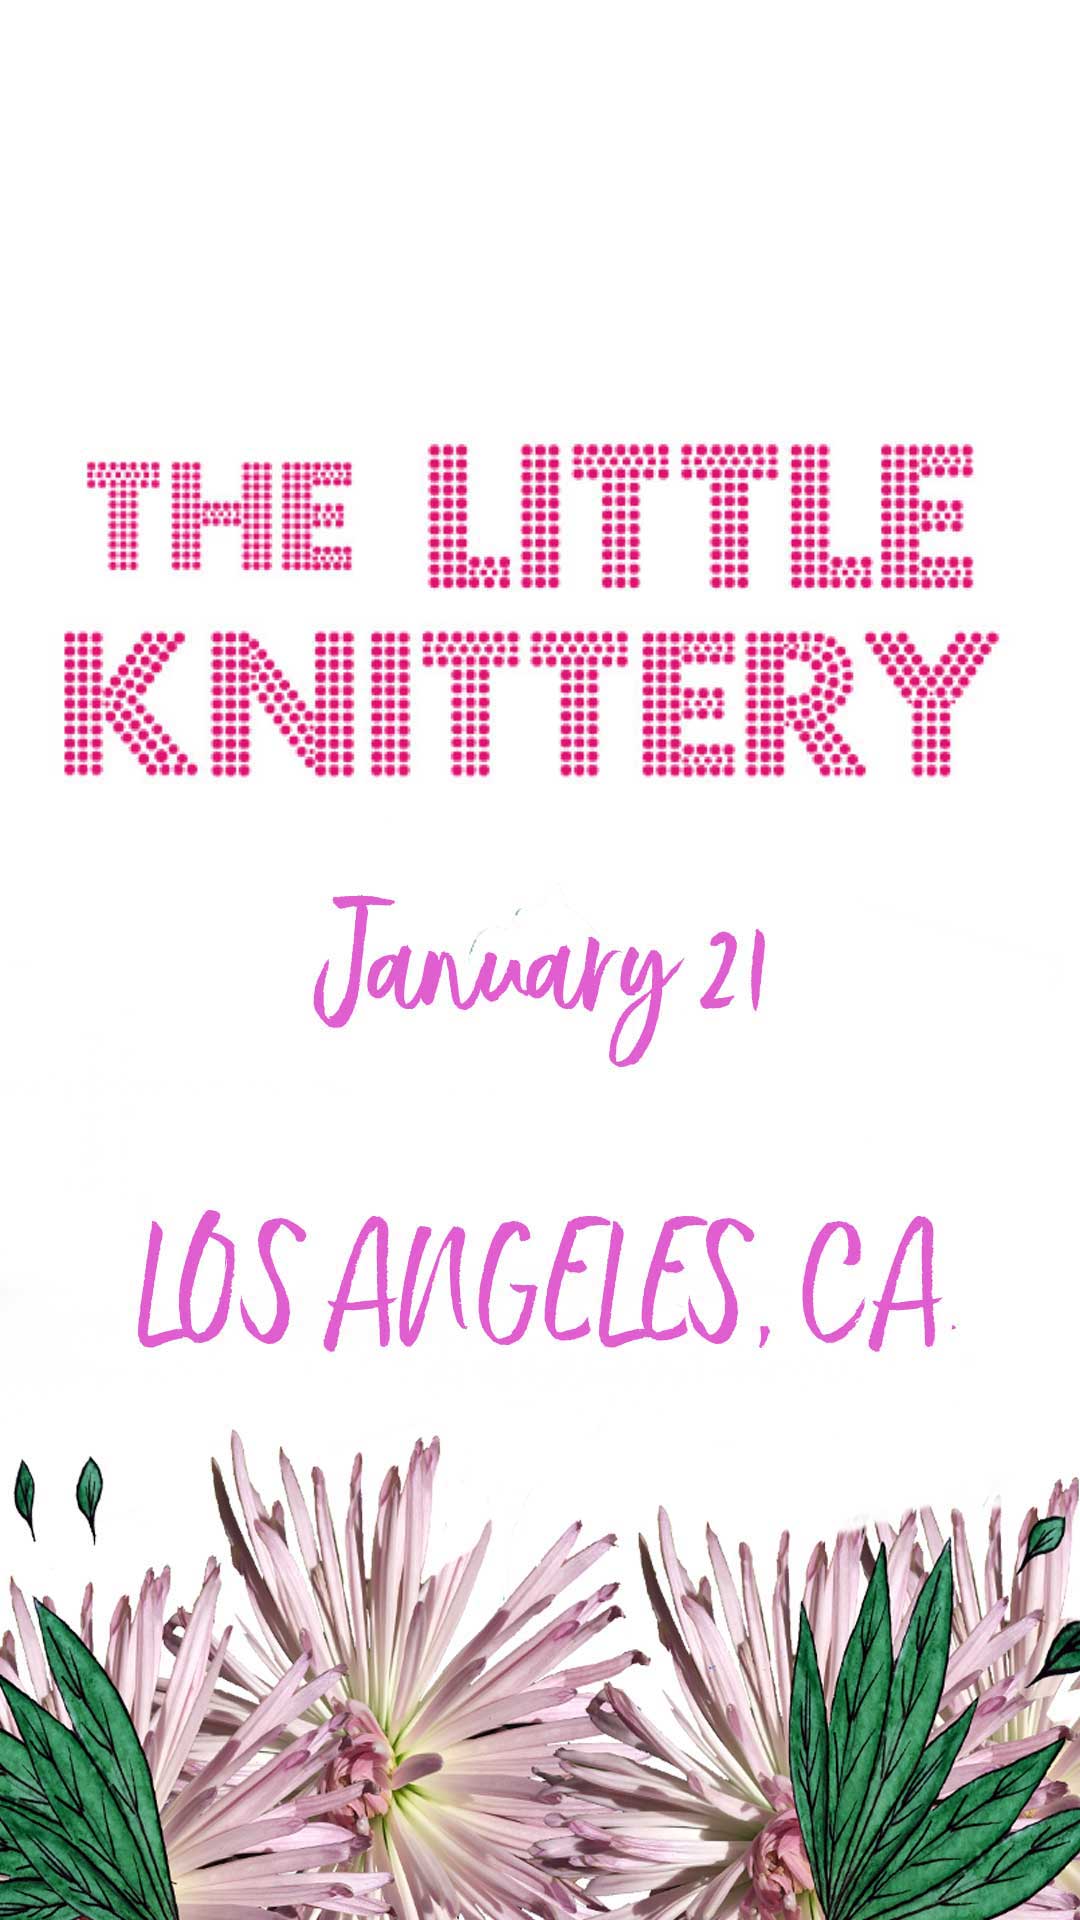 The Little Knittery LA